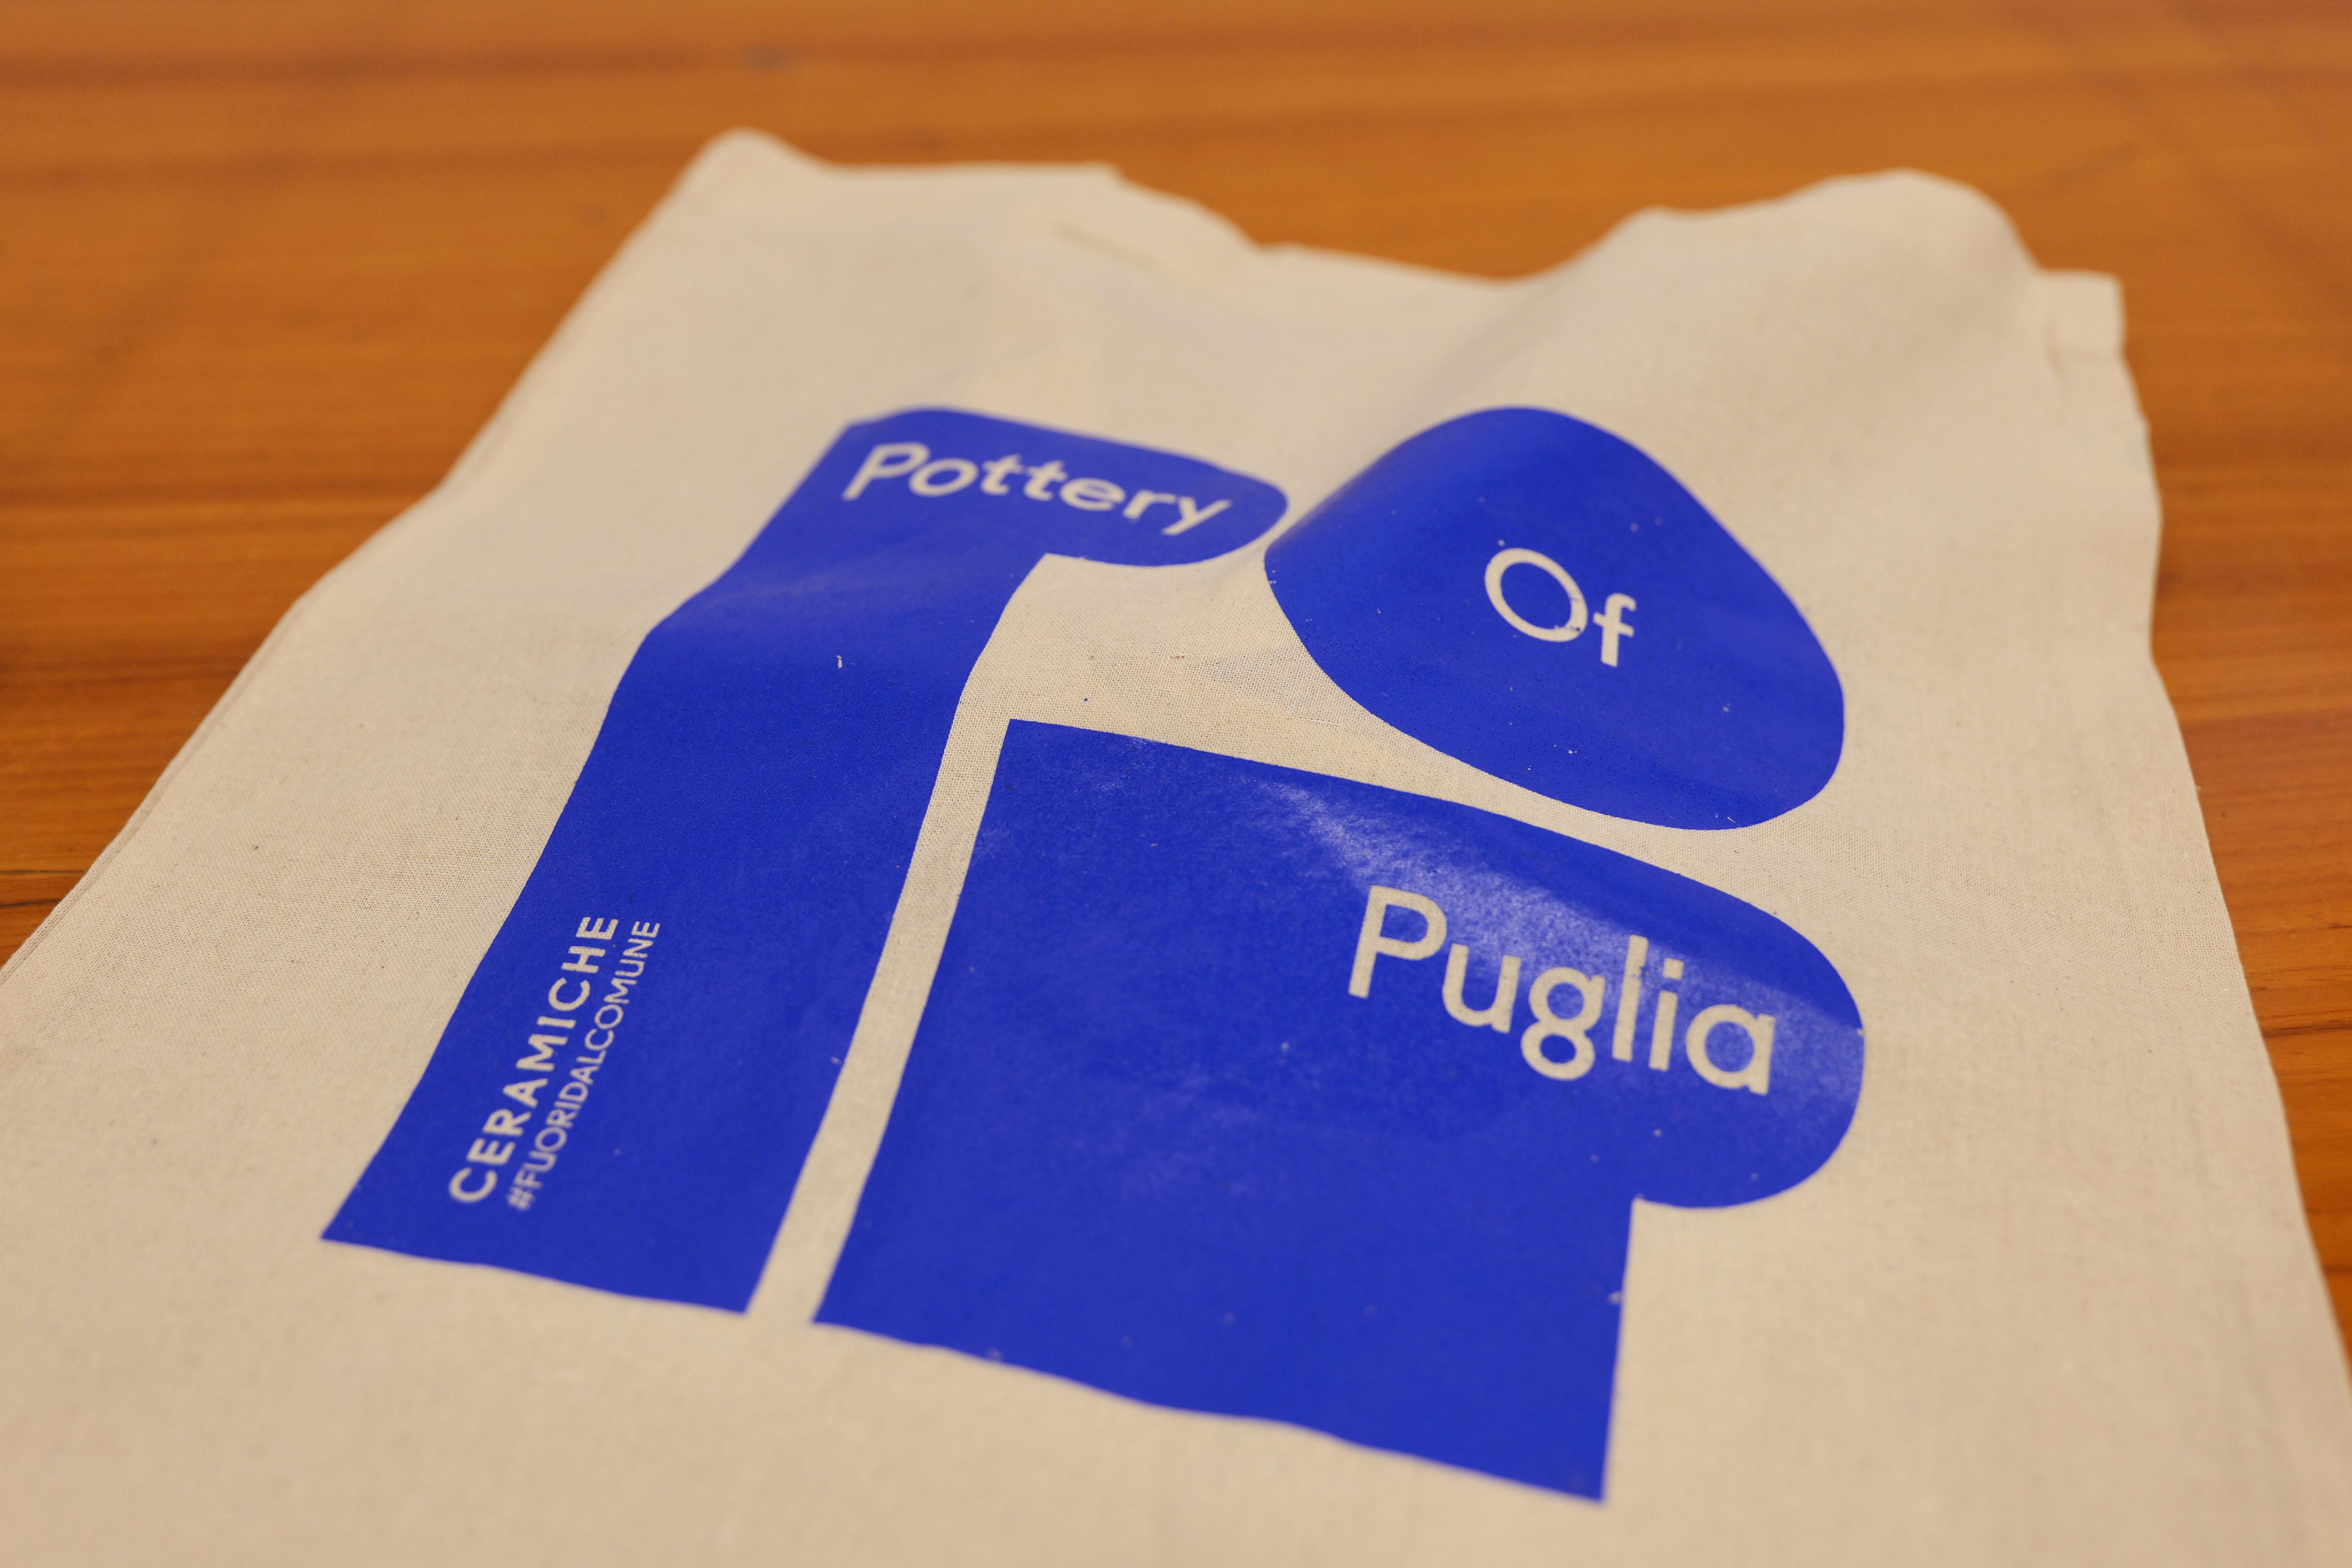 Galleria La ceramica pugliese è POP! Presentato il nuovo brand “Pottery of Puglia” - Diapositiva 12 di 12